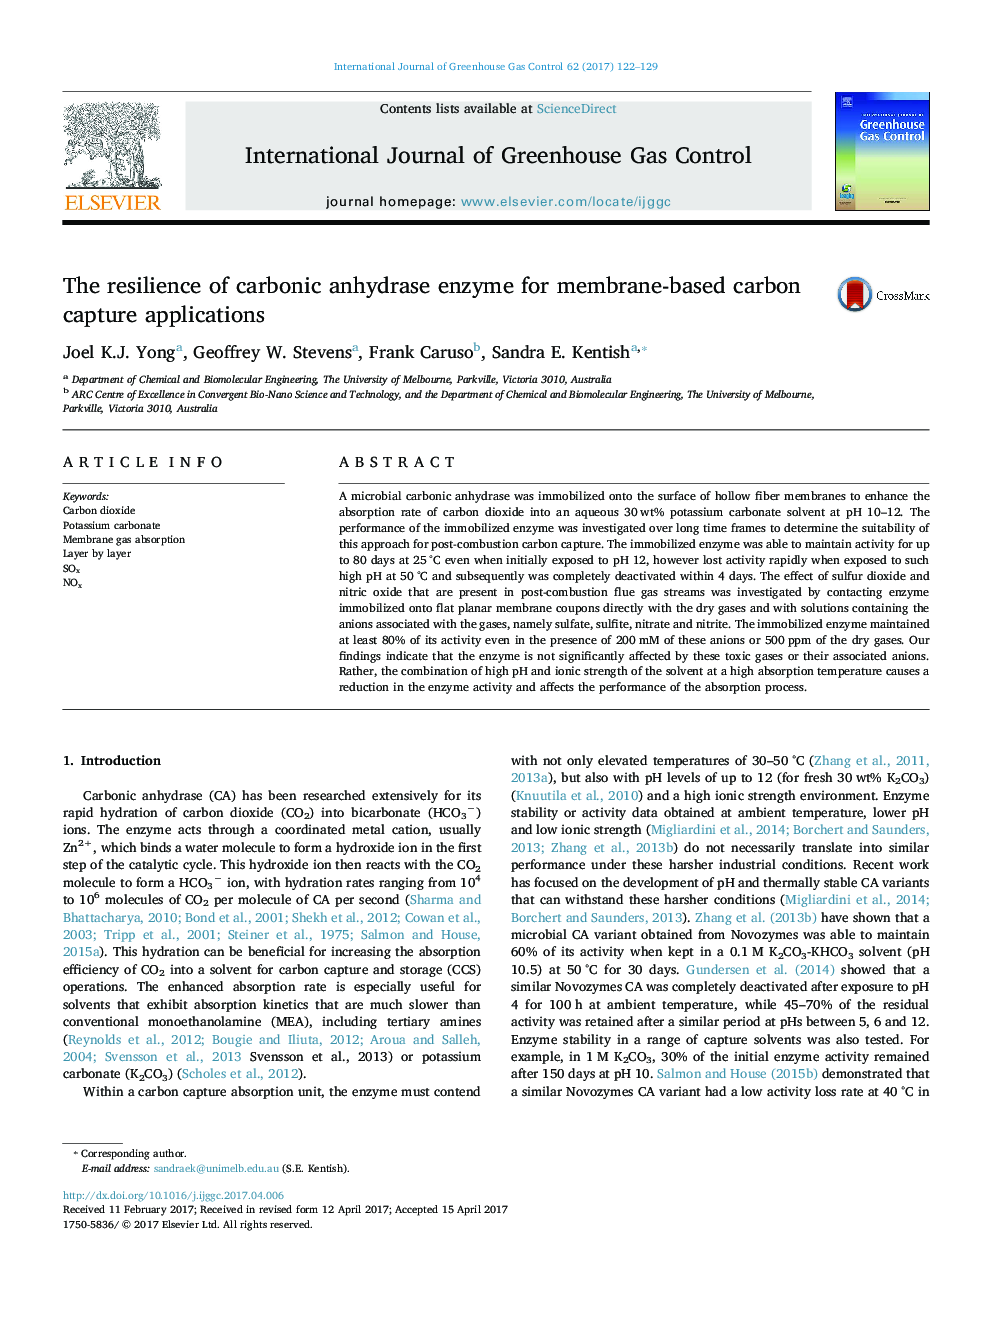 انعطاف پذیری آنزیم کربنیک آنهیداز برای کاربردهای جذب کربن بر اساس غشا 